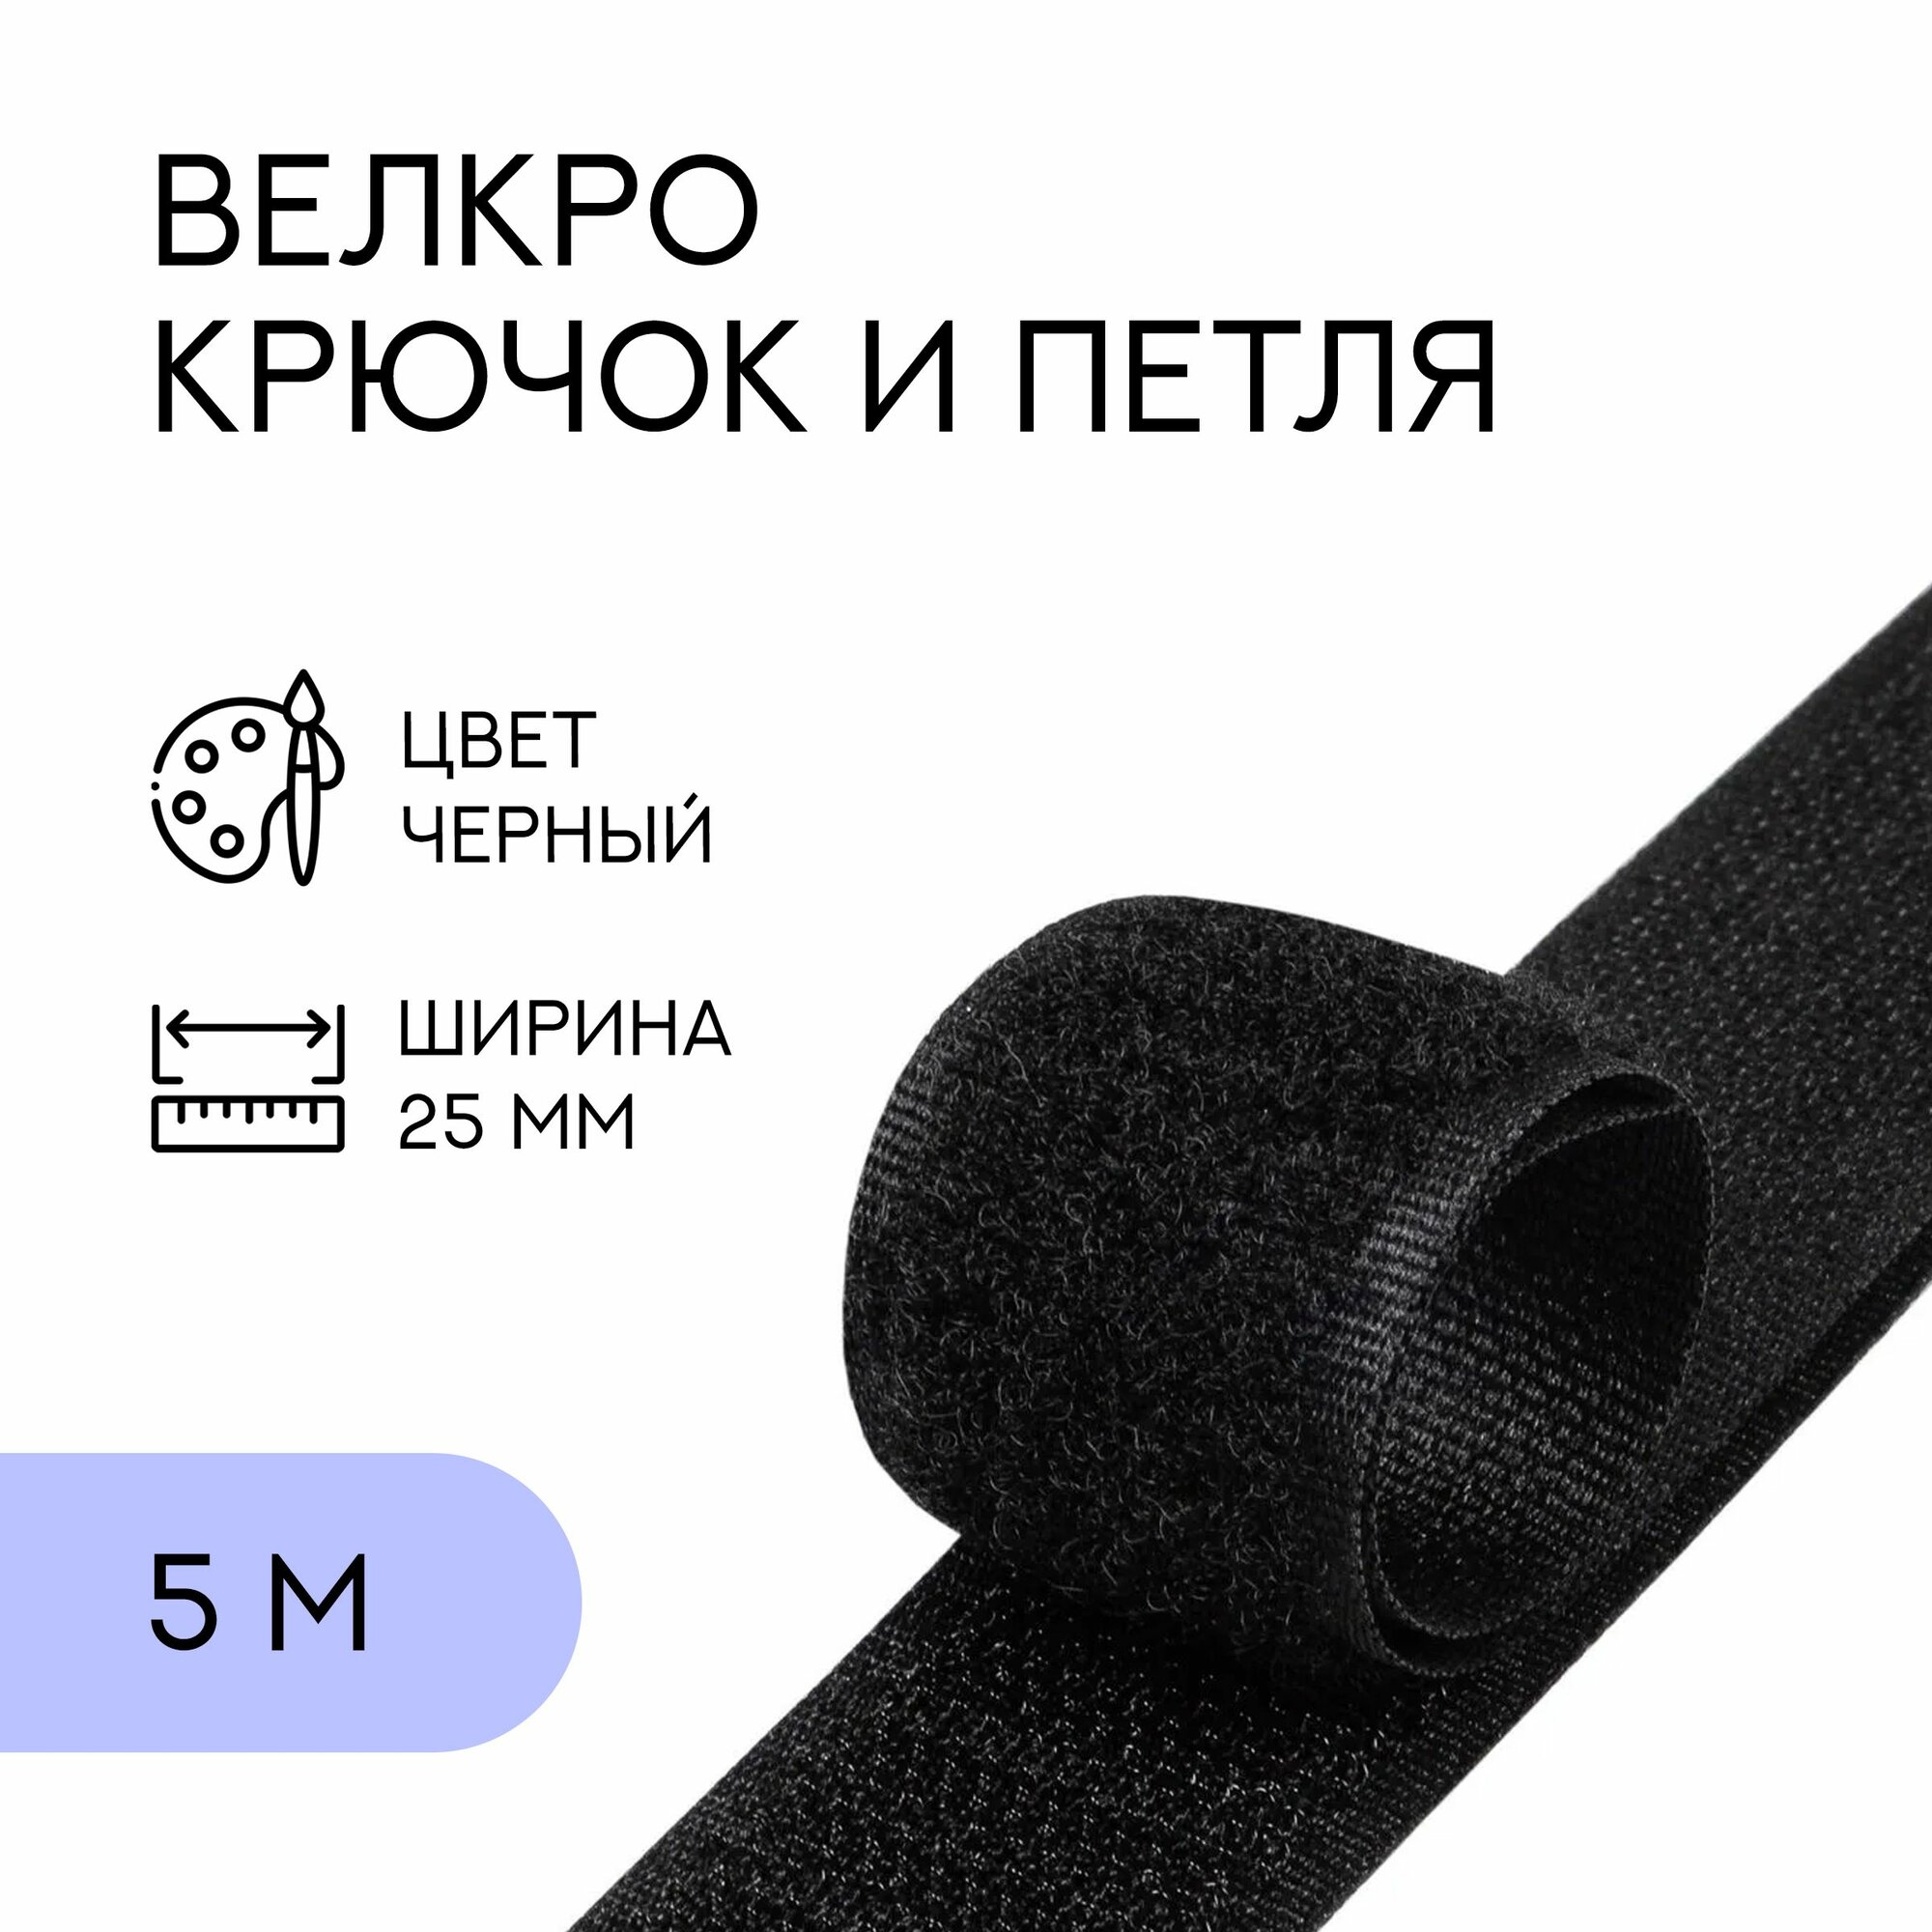 Велкро комплект (петля и крючок) / лента контактная липучка, 25 мм, черный, 5 м